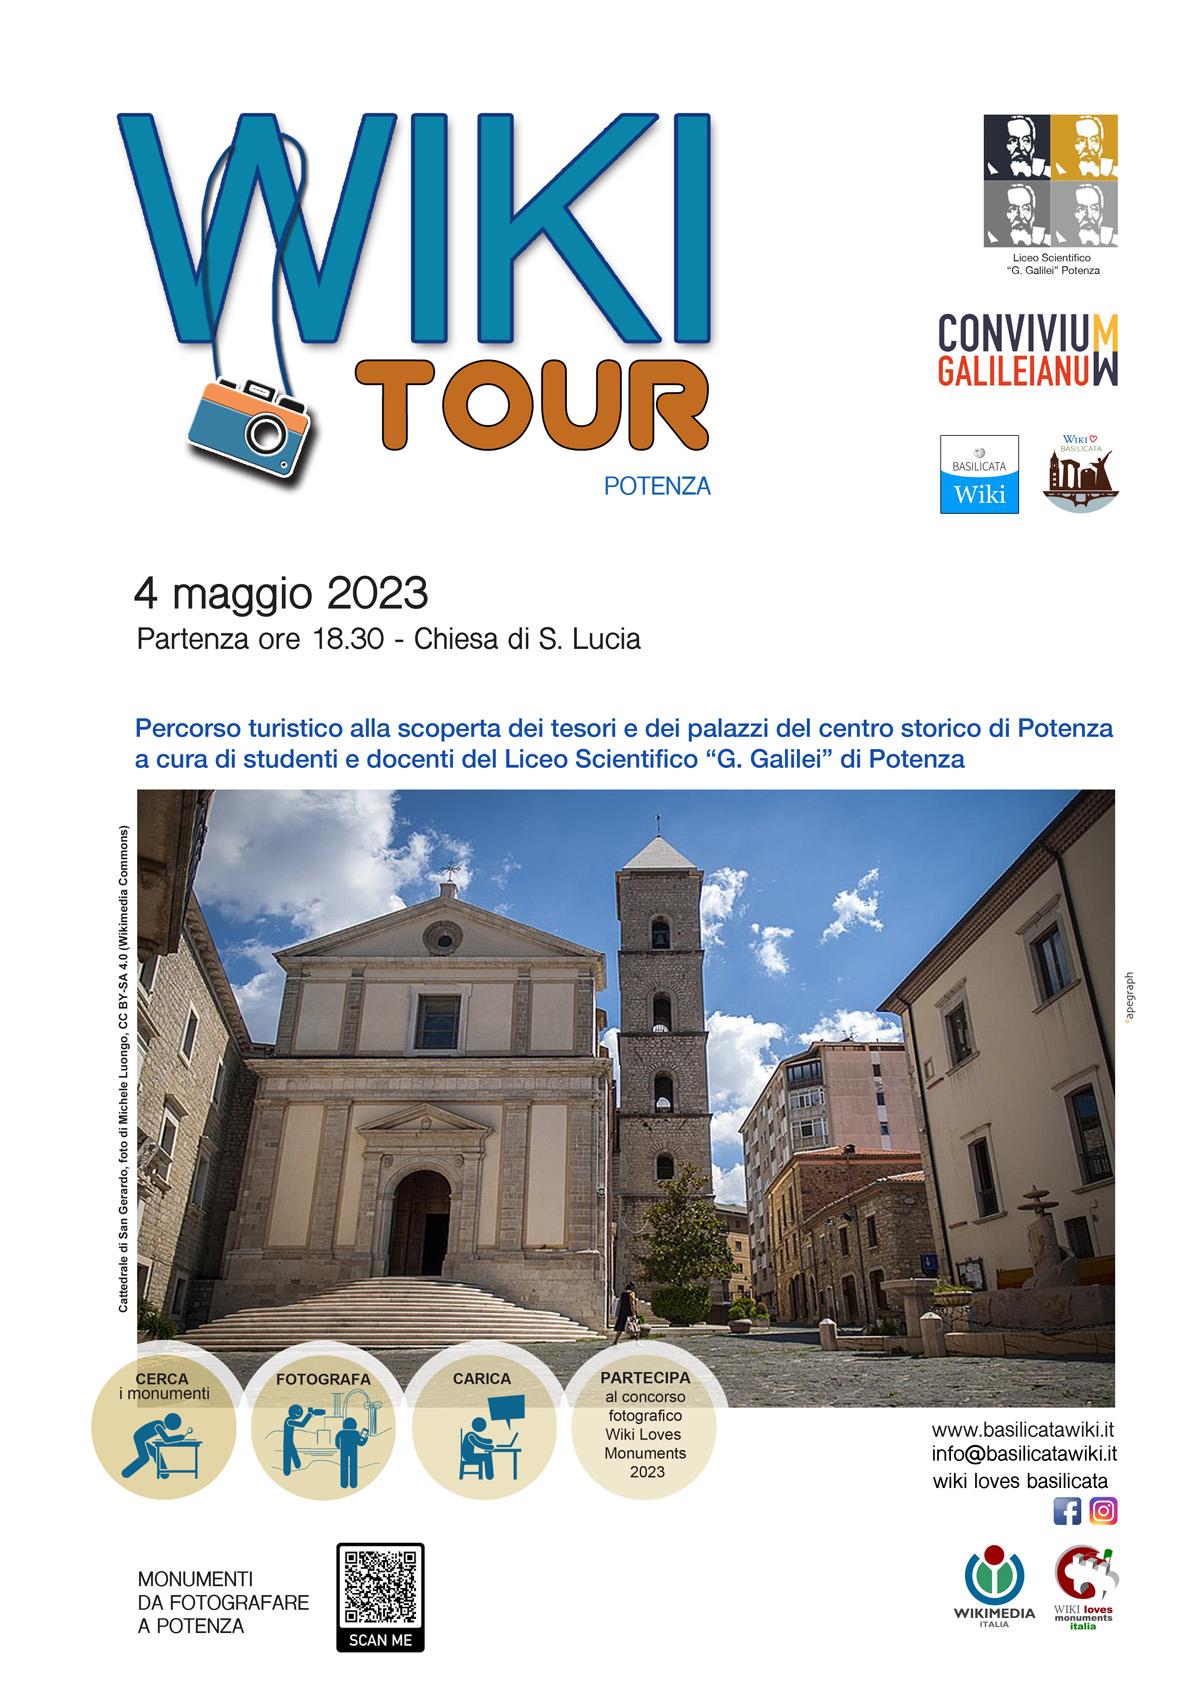 Wiki tour Liceo Scientifico G.Galilei di Potenza- Convivium Galileianum.2023